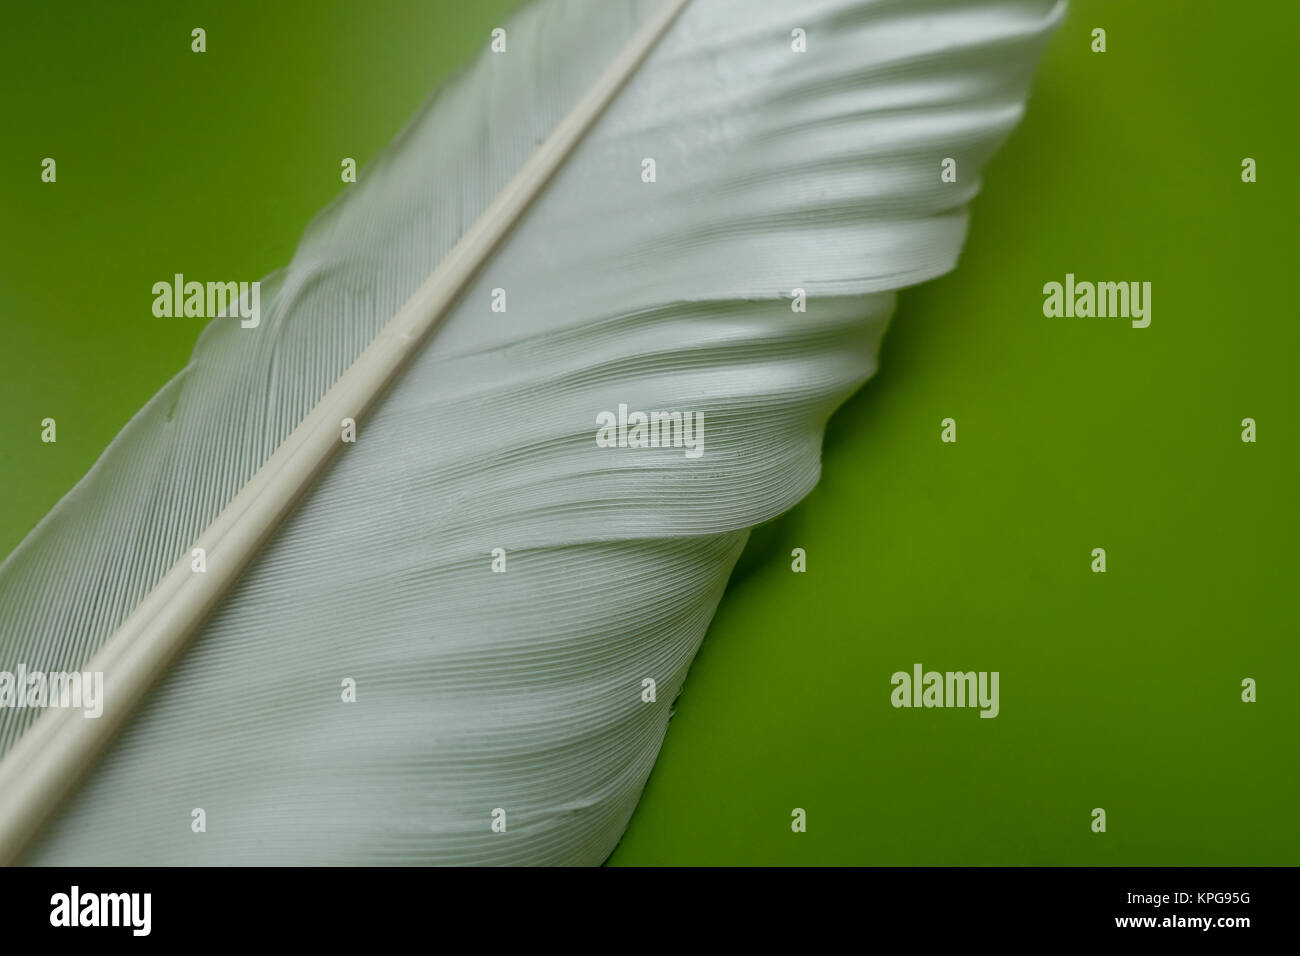 white bird feather on green background Stock Photo